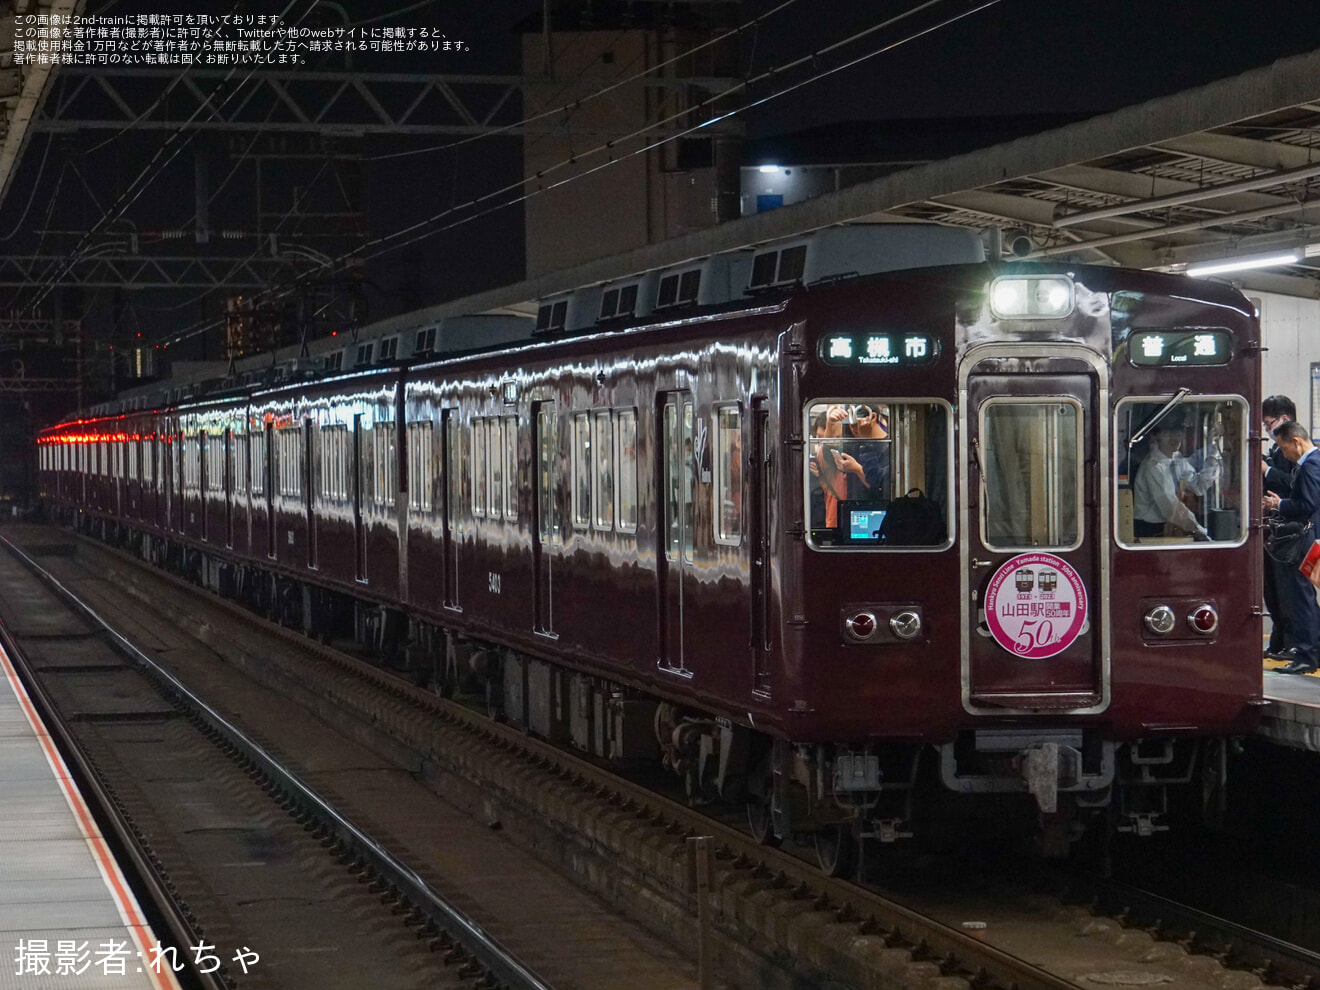 【阪急】山田駅開業50周年記念に伴うHM掲出の拡大写真